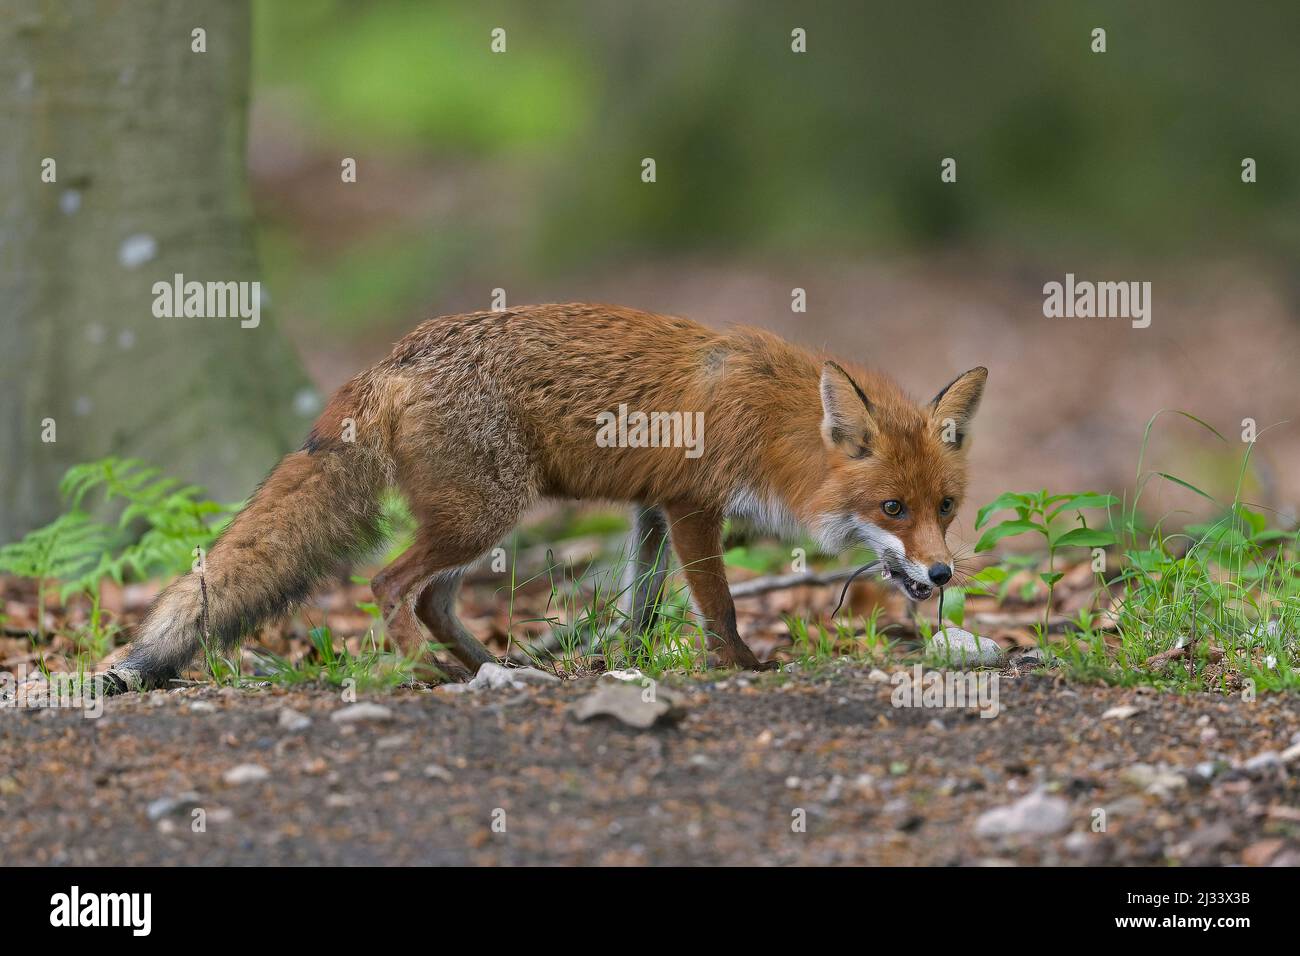 Caccia volpe rossa (Vulpes vulpes) di ritorno a cubs in den con due topi catturati in bocca nella foresta in primavera Foto Stock